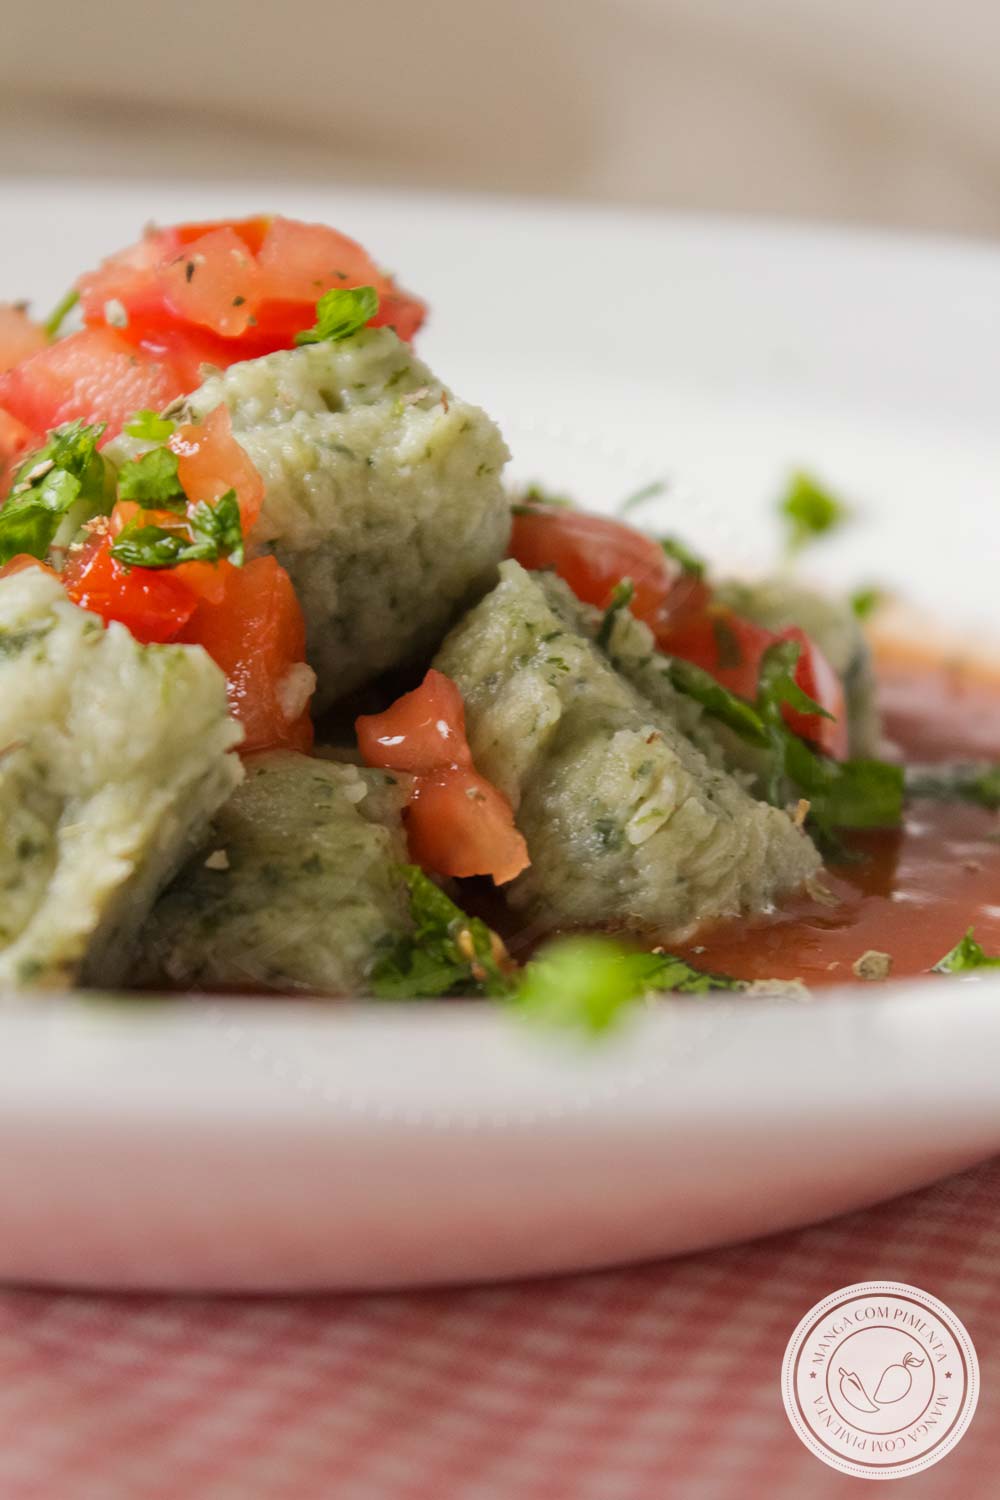 Nhoque de Espinafre com Batata - para um almoço caseiro e delicioso no final de semana!